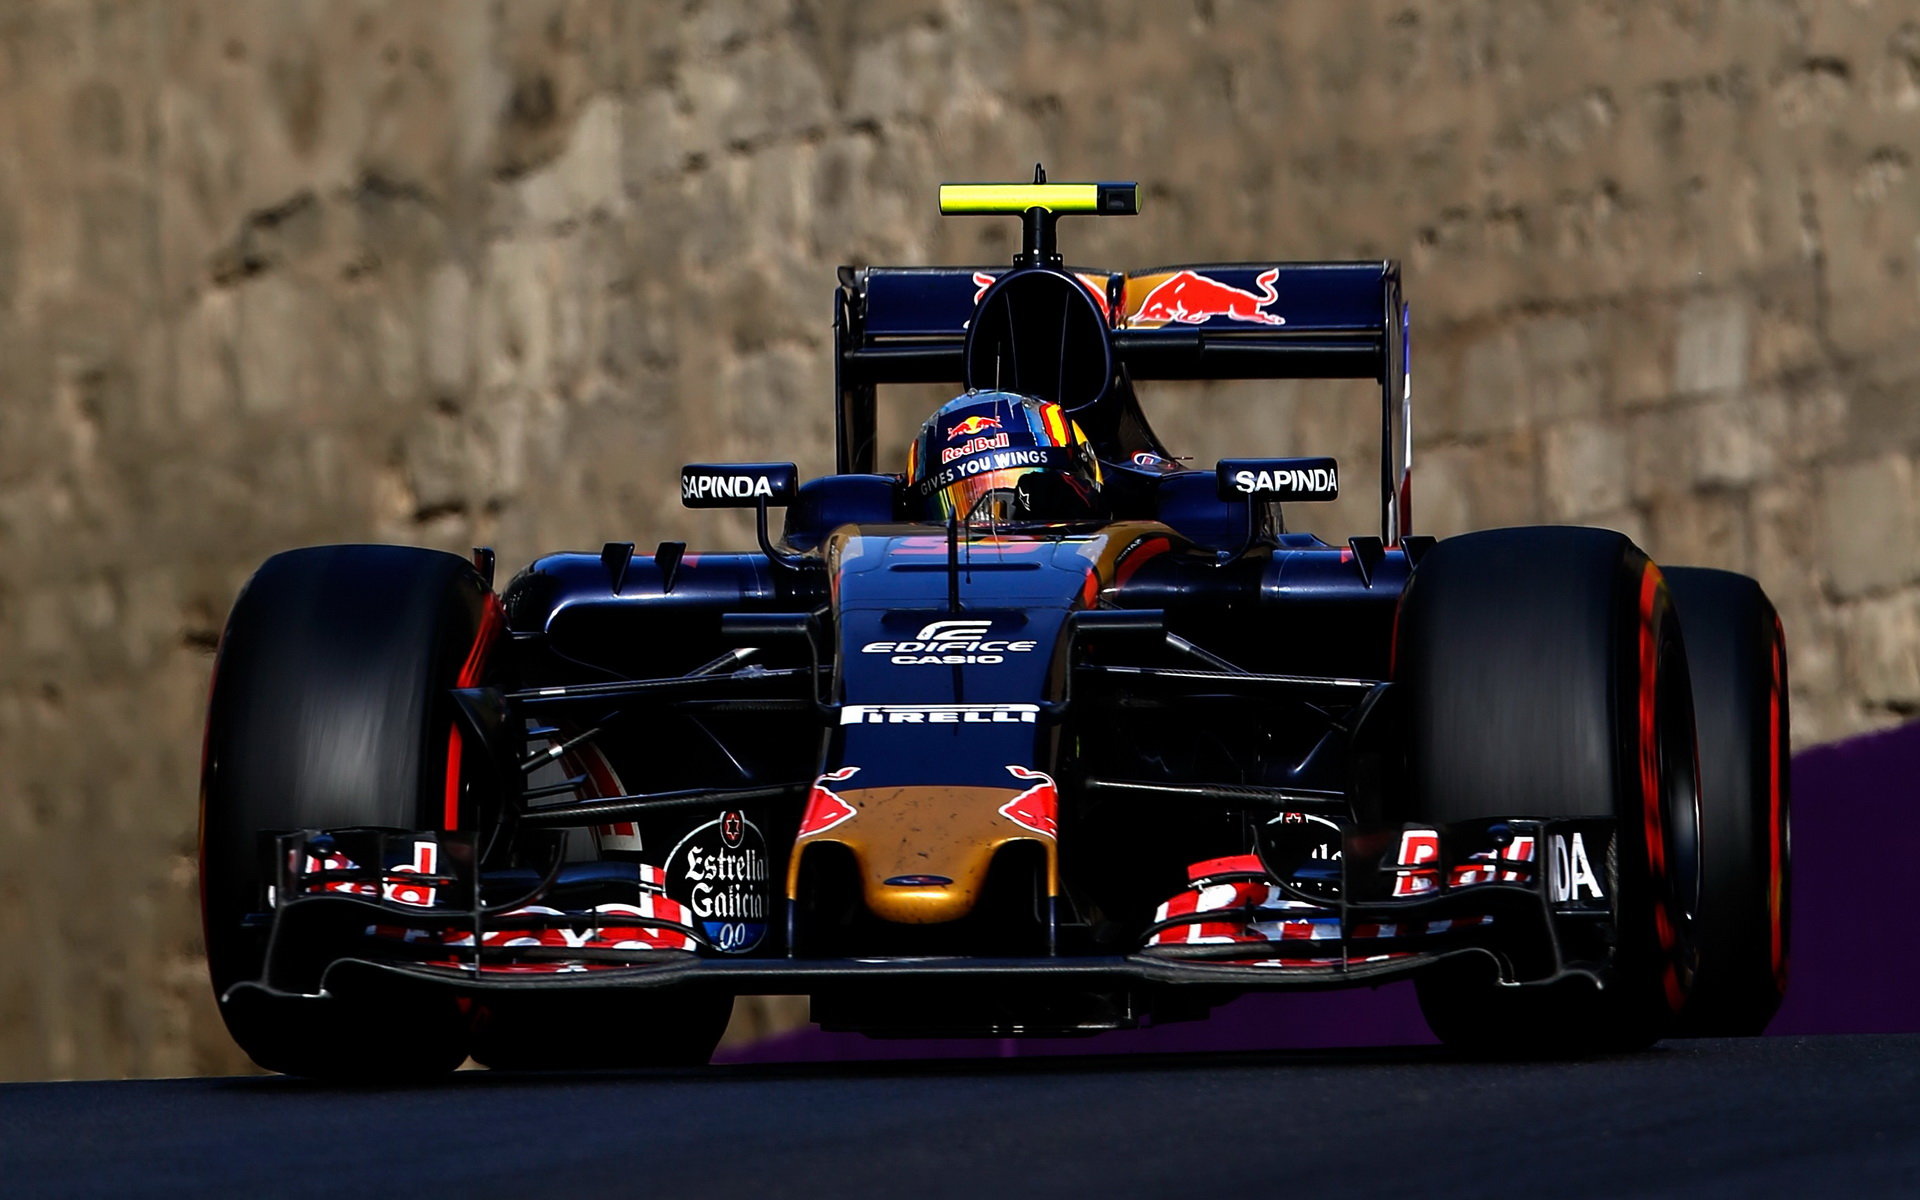 Carlos Sainz jezdí letos u Toro Rosso, bude tomu tak i příští rok?